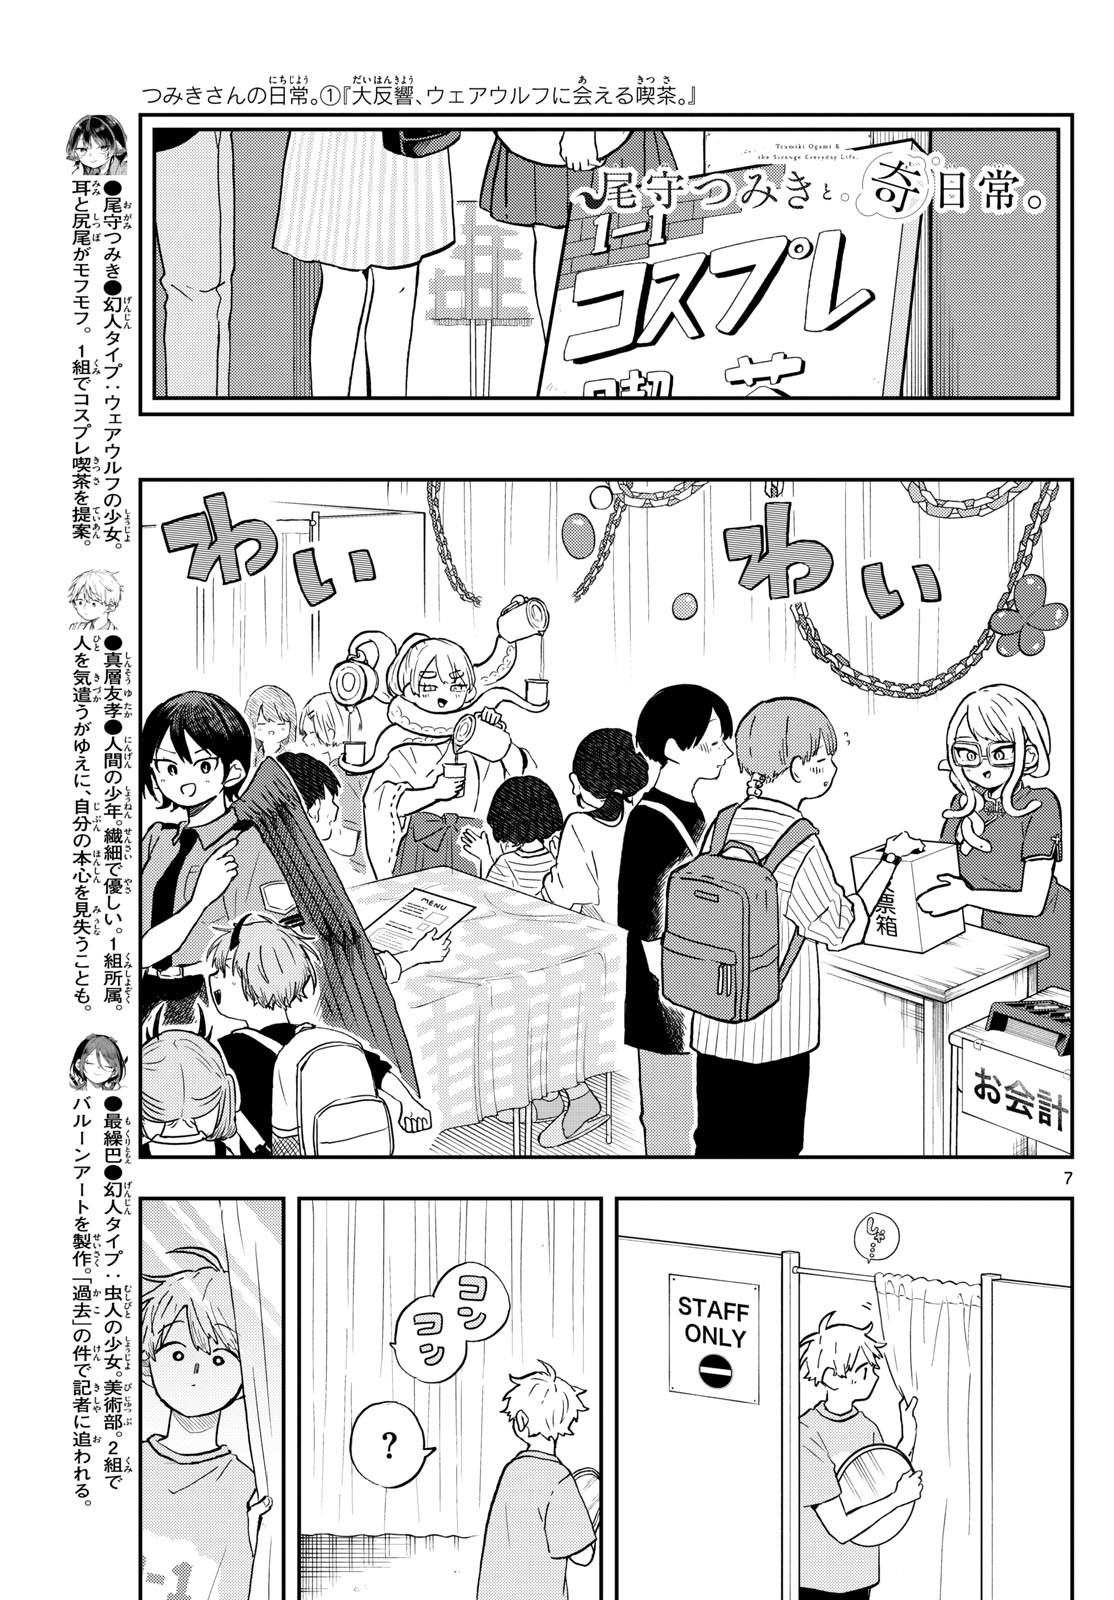 Omori Tsumiki to Kinichijou. - Chapter 30 - Page 7